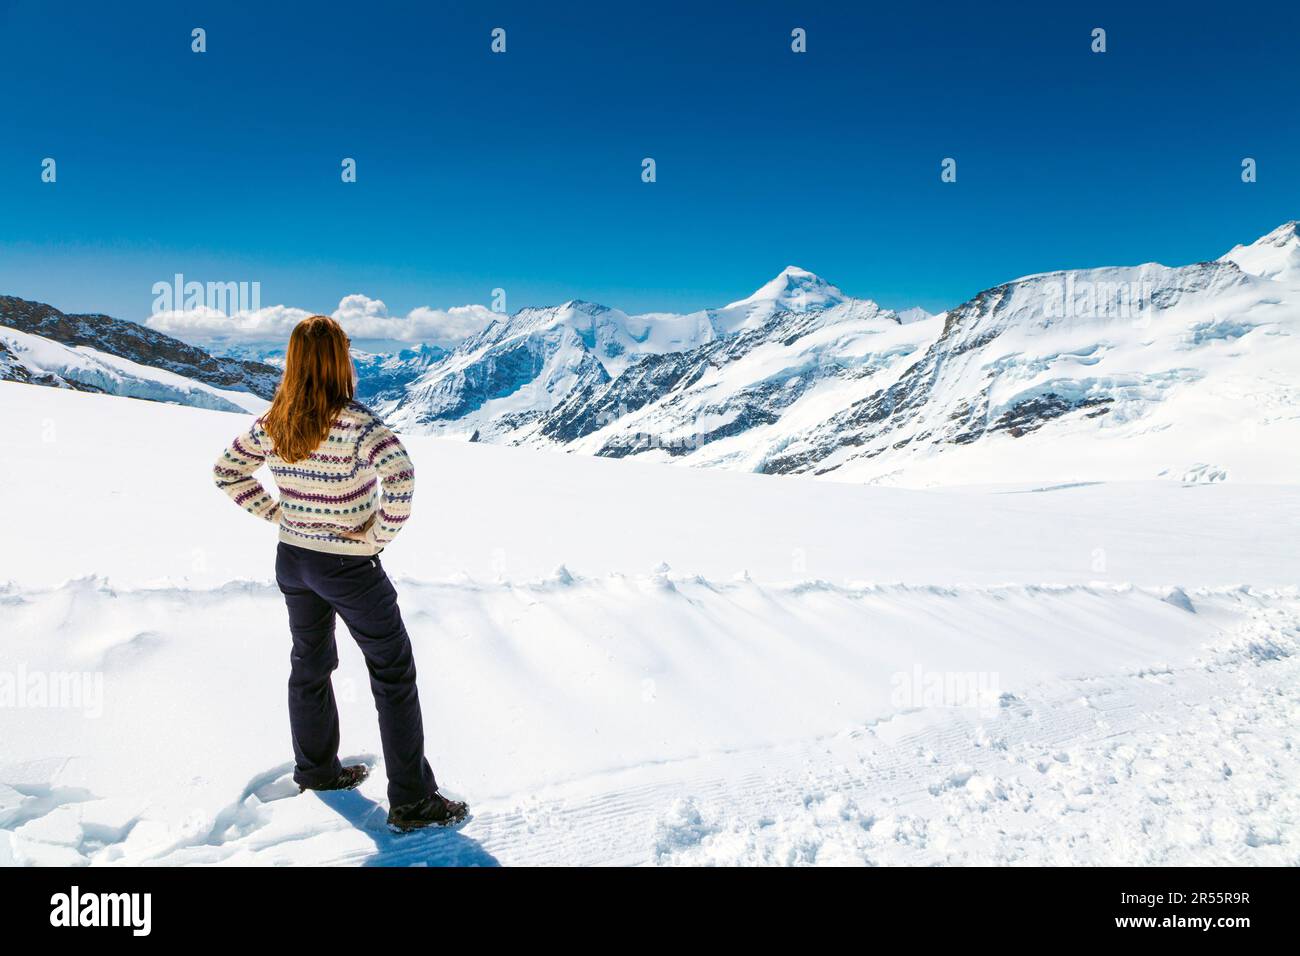 Eine Frau mit malerischem Blick auf die Berge und den Aletsch-Gletscher, der Wanderweg vom Jungfrau-Gipfel zum Mönchsjoch Hut, Schweizer Alpen, Schweiz Stockfoto